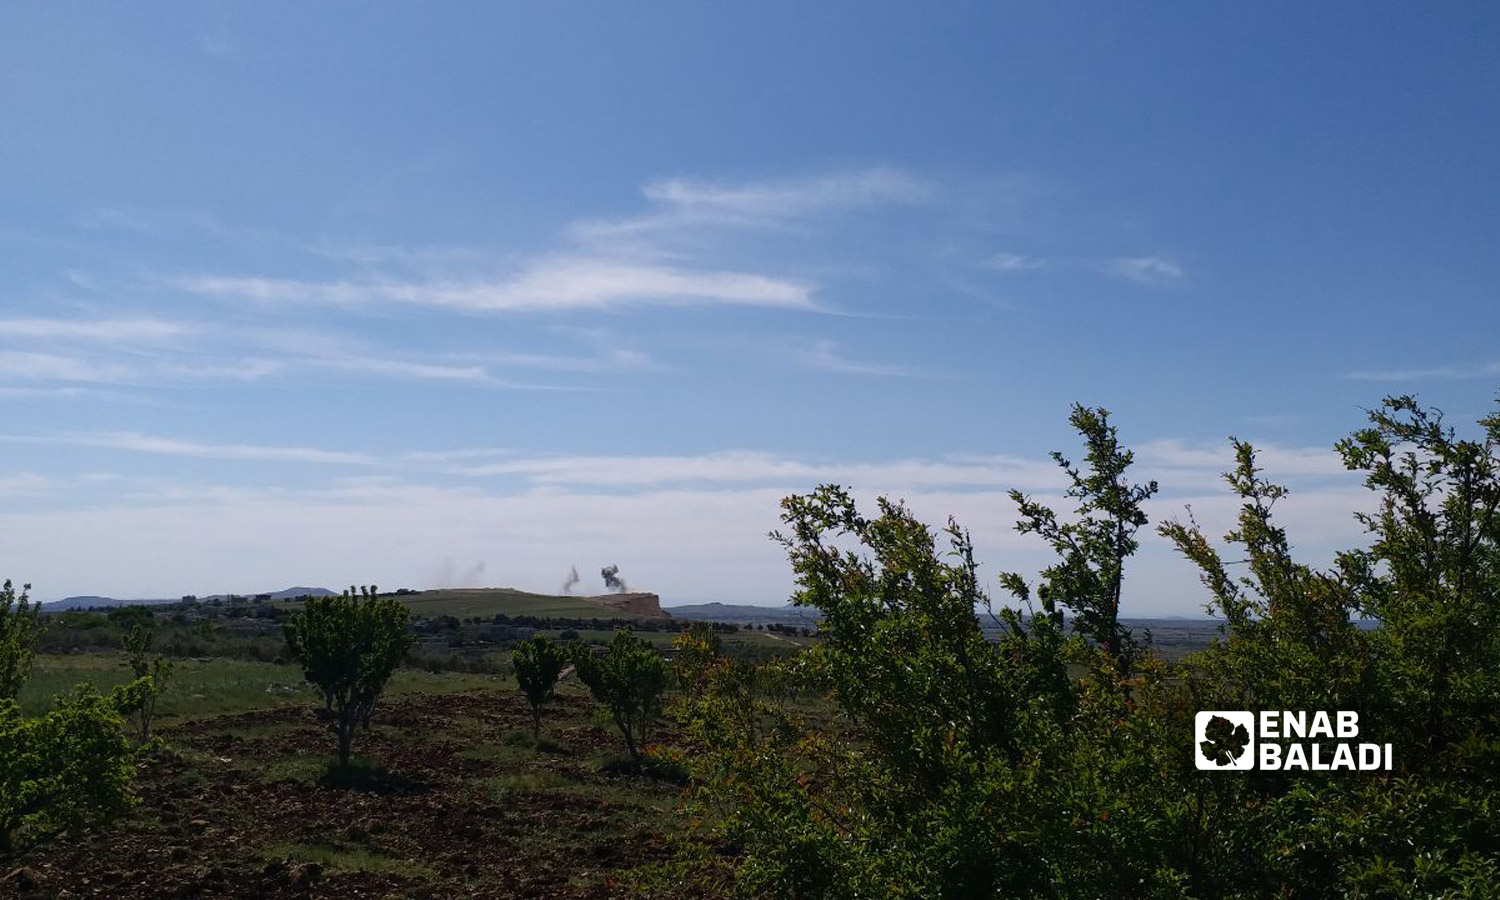 تصاعد الدخان إثر قصف إسرائيلي على مناطق تابعة لـ"اللواء 90" في بلدة جباتا الخشب بريف القنيطرة الشمالي- 11 من أيار 2022 (عنب بلدي)